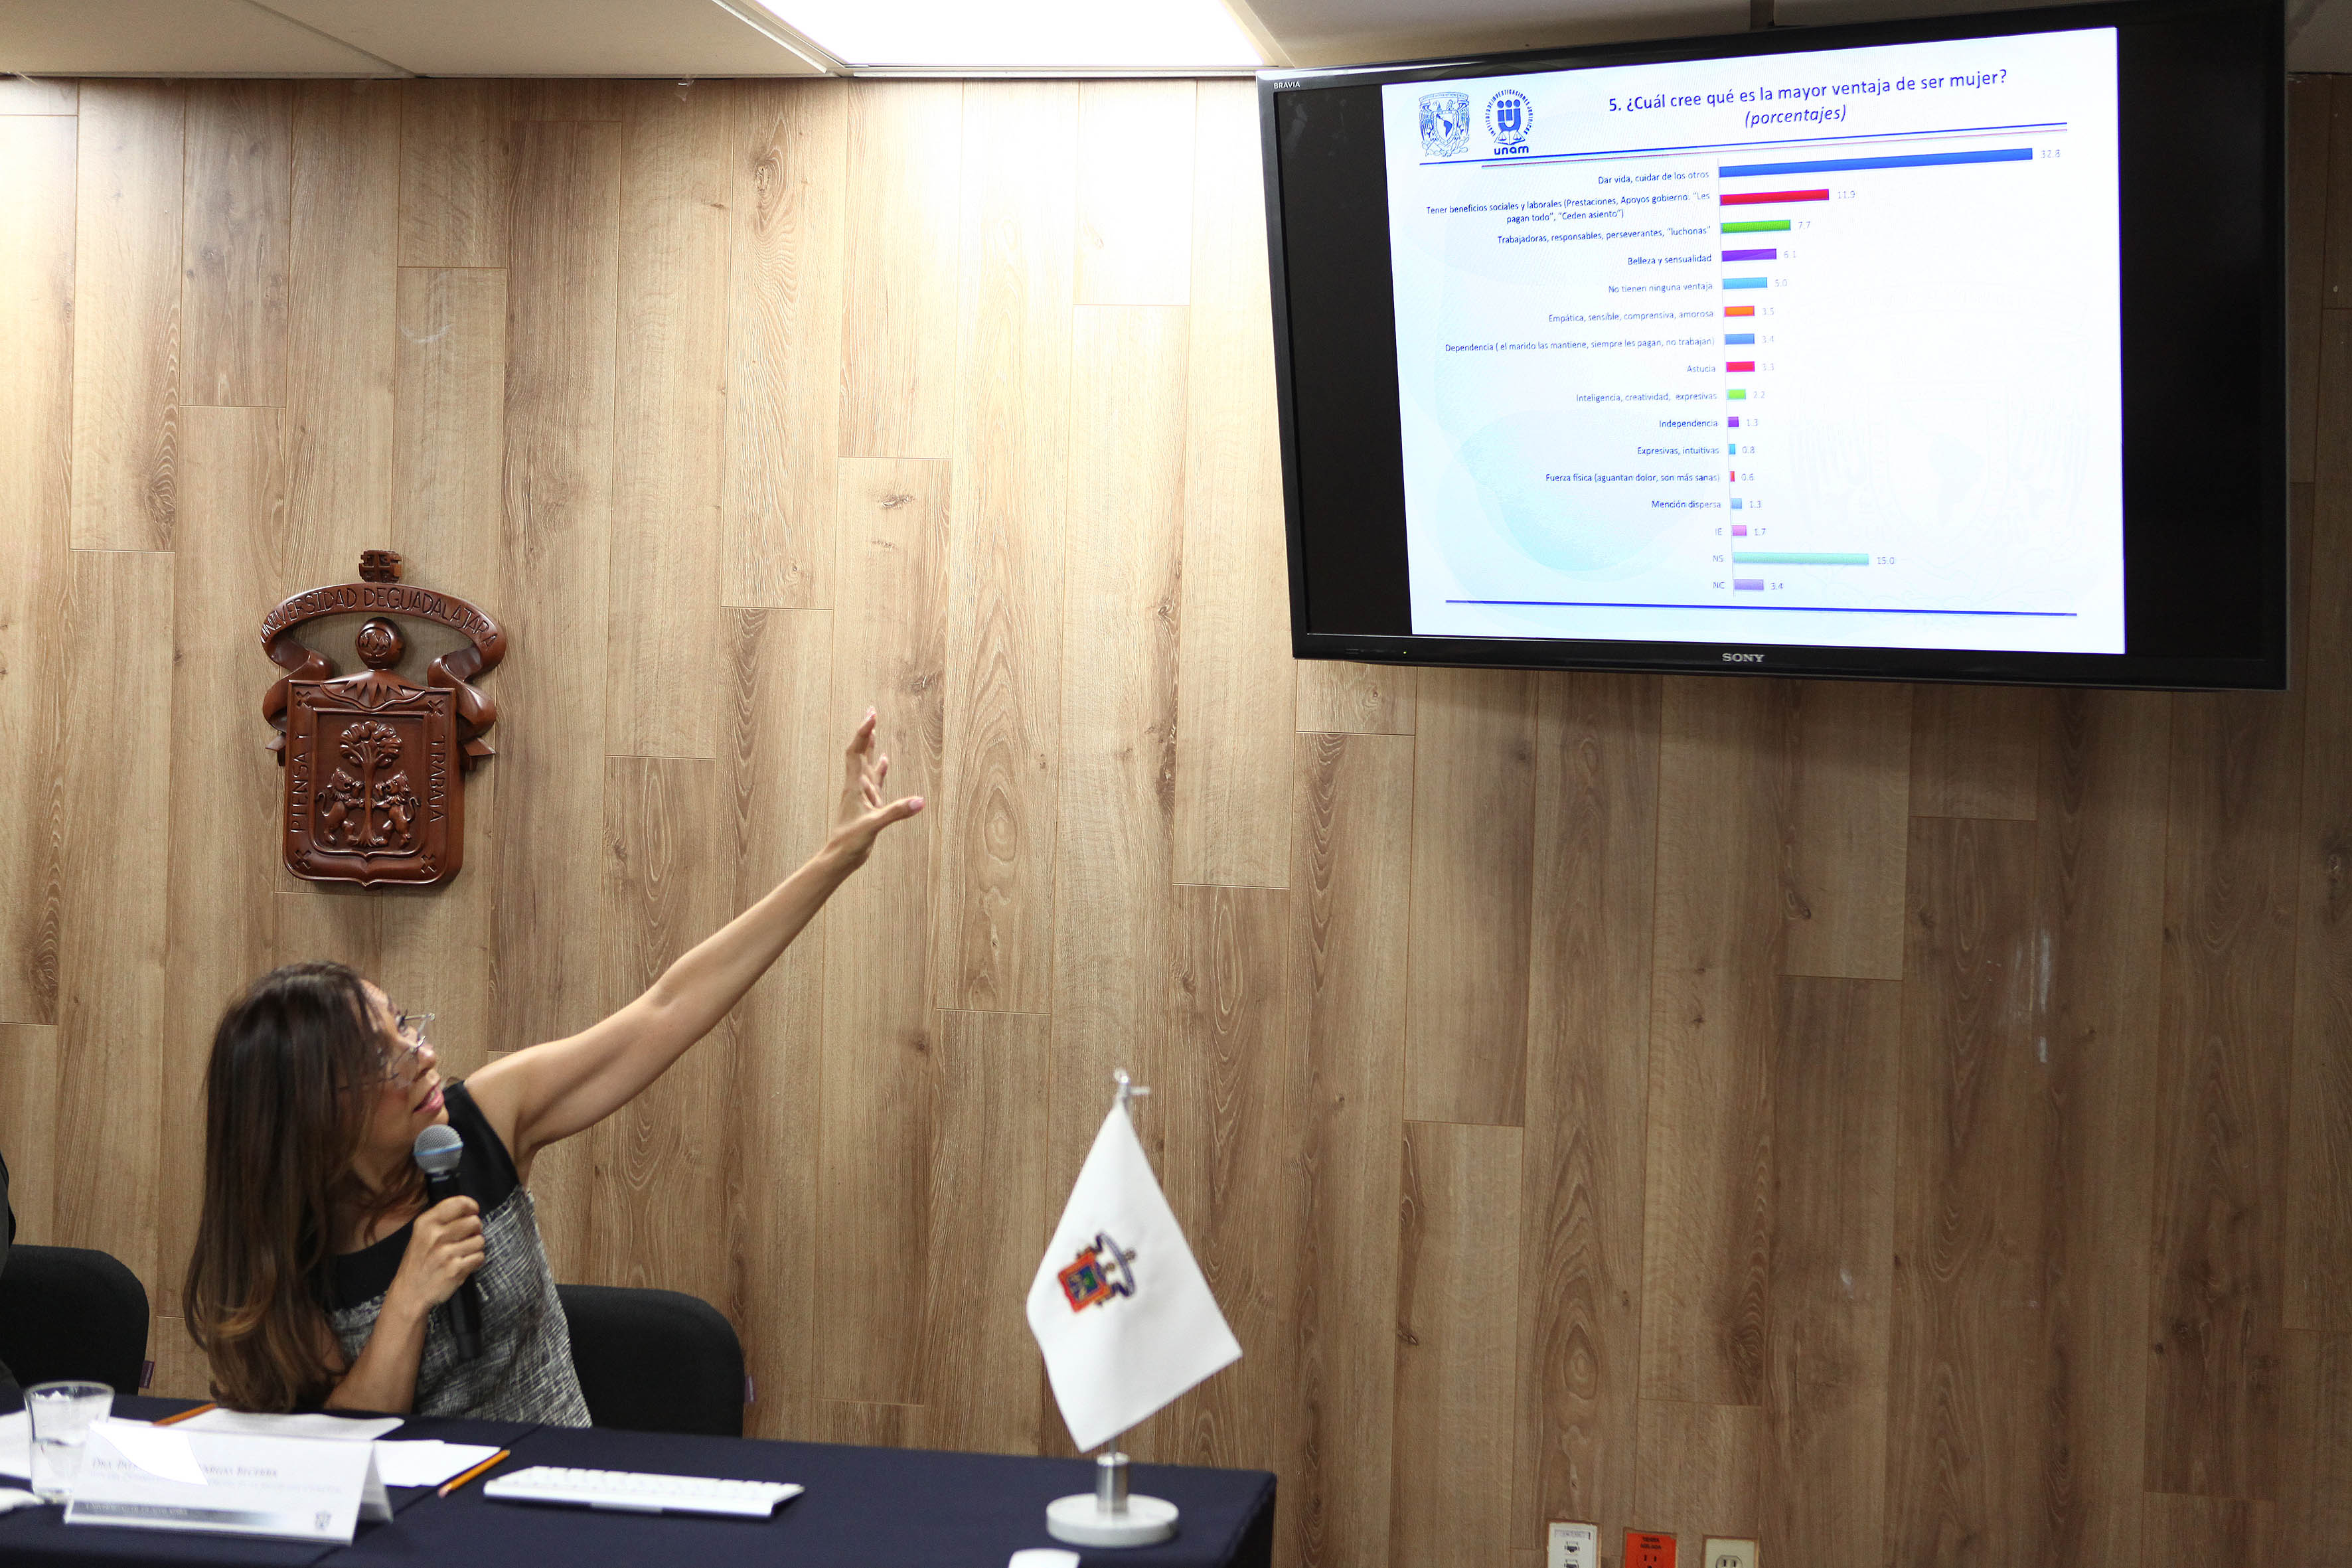 La doctora Patricia Noemí Vargas Becerra, investigadora de la UdeG, explicando una lámina de estadísitcas, con respecto a lo que la gente opina sobre las ventajas de ser mujer.